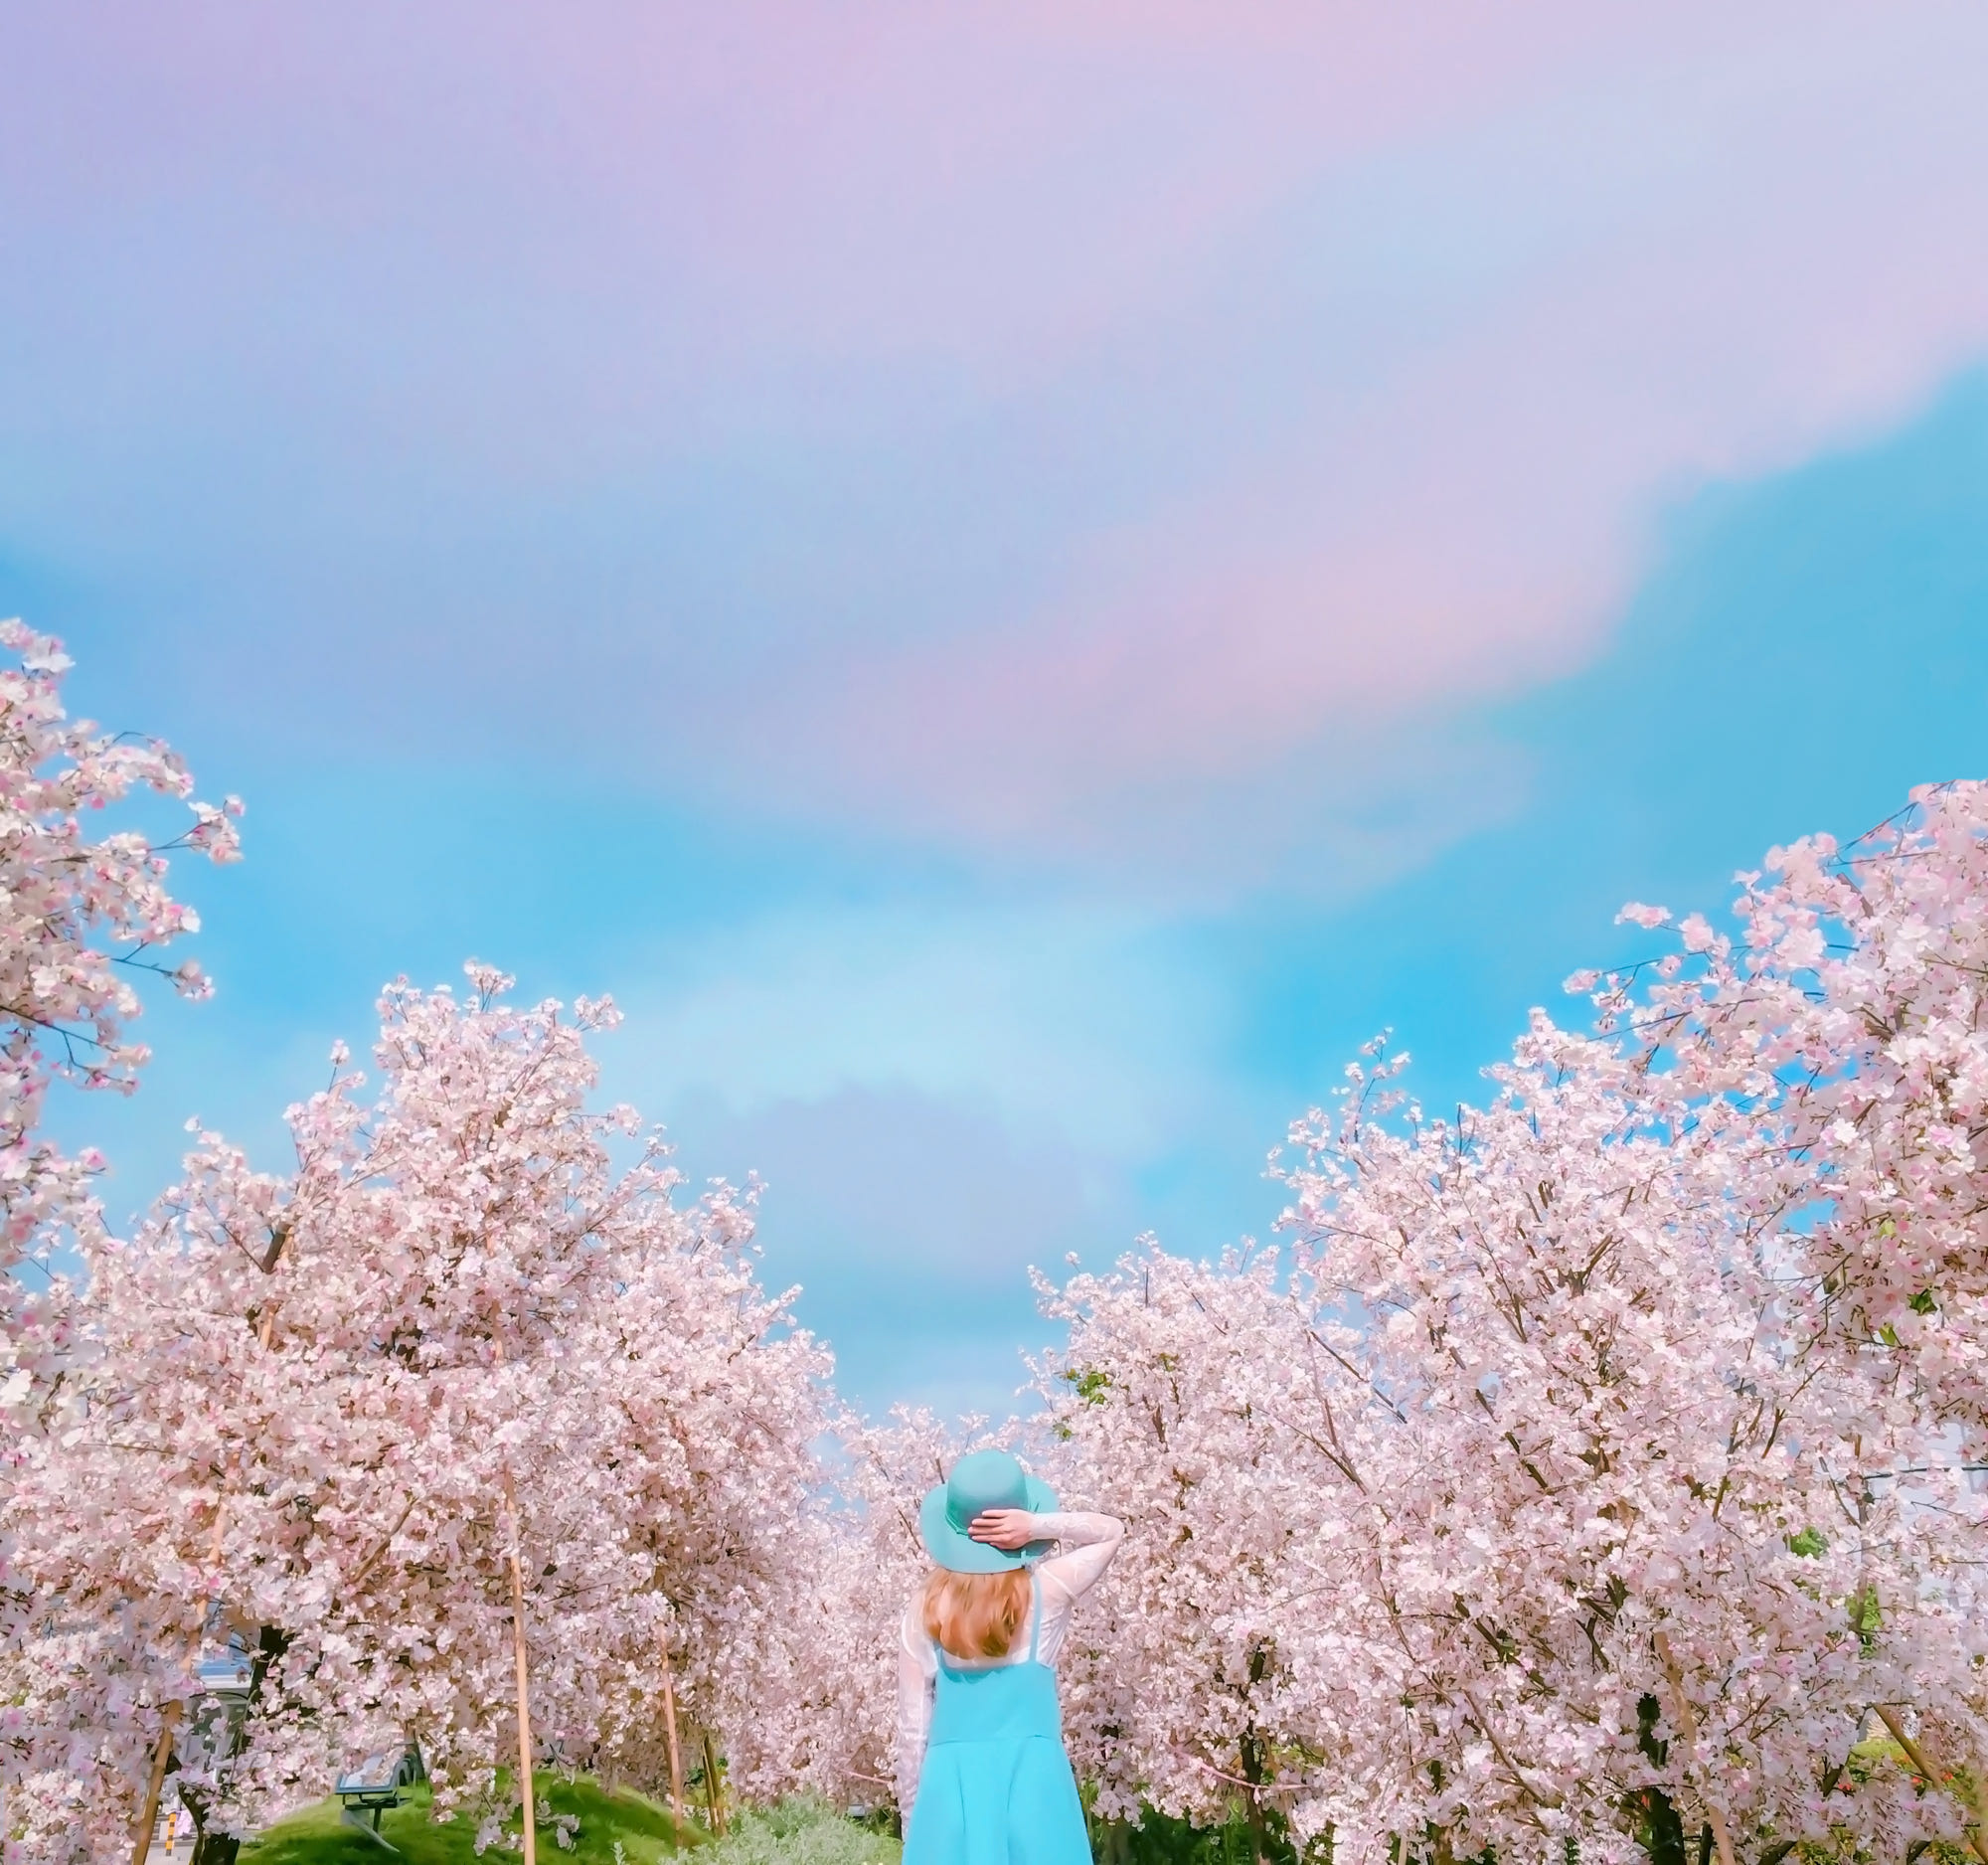 Фото Девушка в шляпке стоит на фоне цветущей сакуры и облачного голубого неба, by Rаi